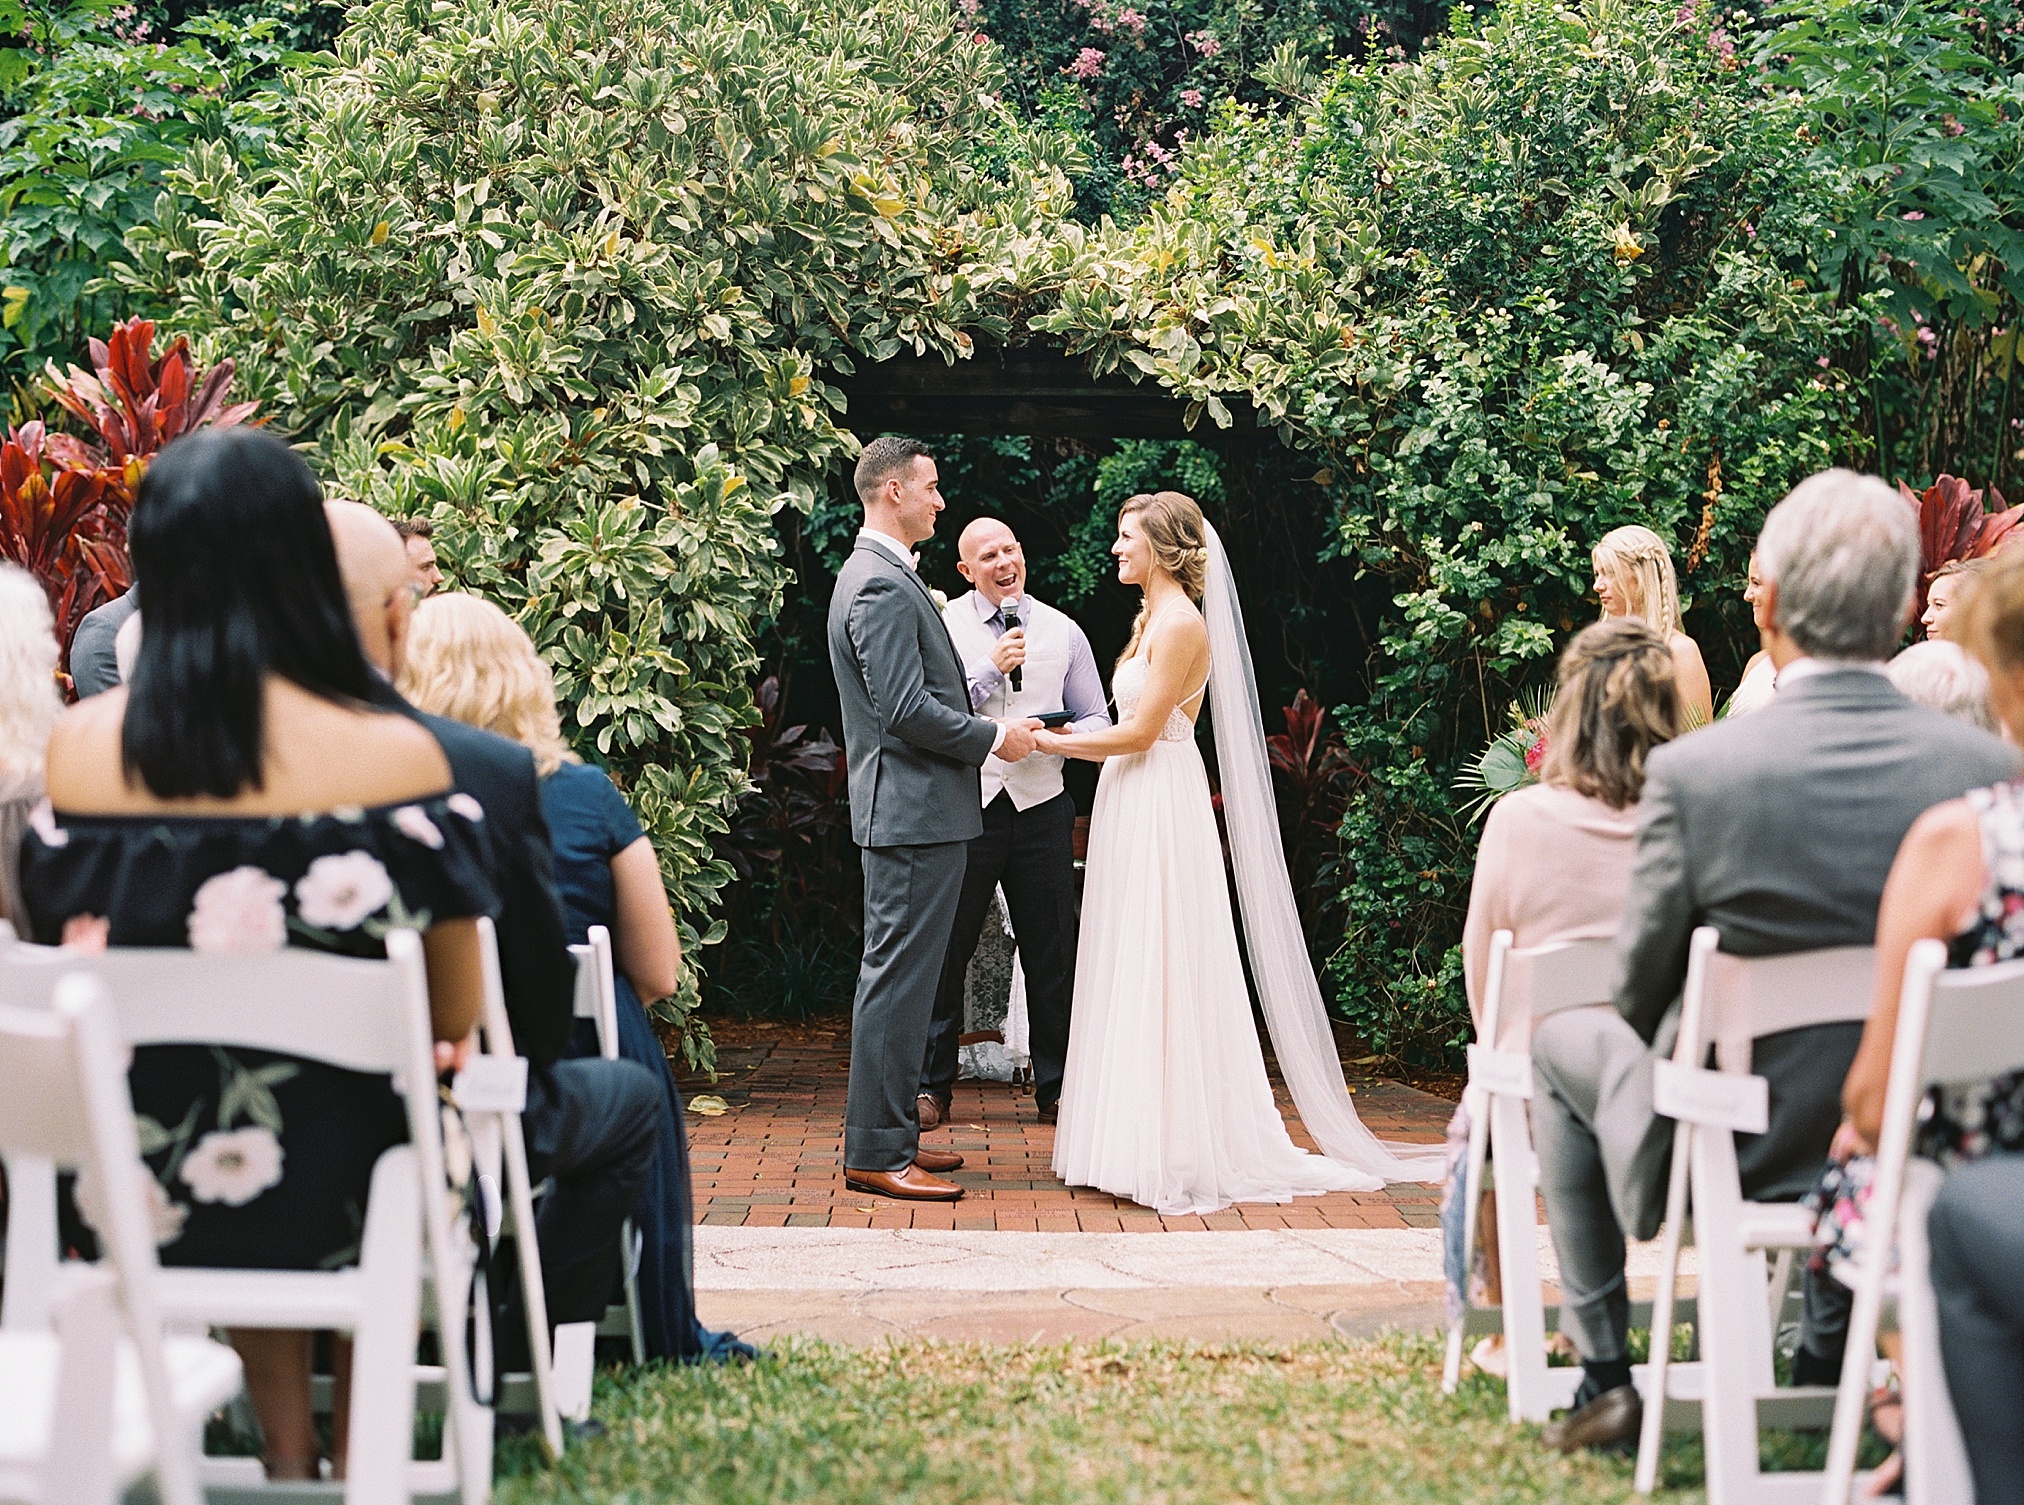 Sunken Gardens Wedding, St Petersburg Wedding Photographer, Tampa Film Wedding Photographer, Tropical wedding inspiration